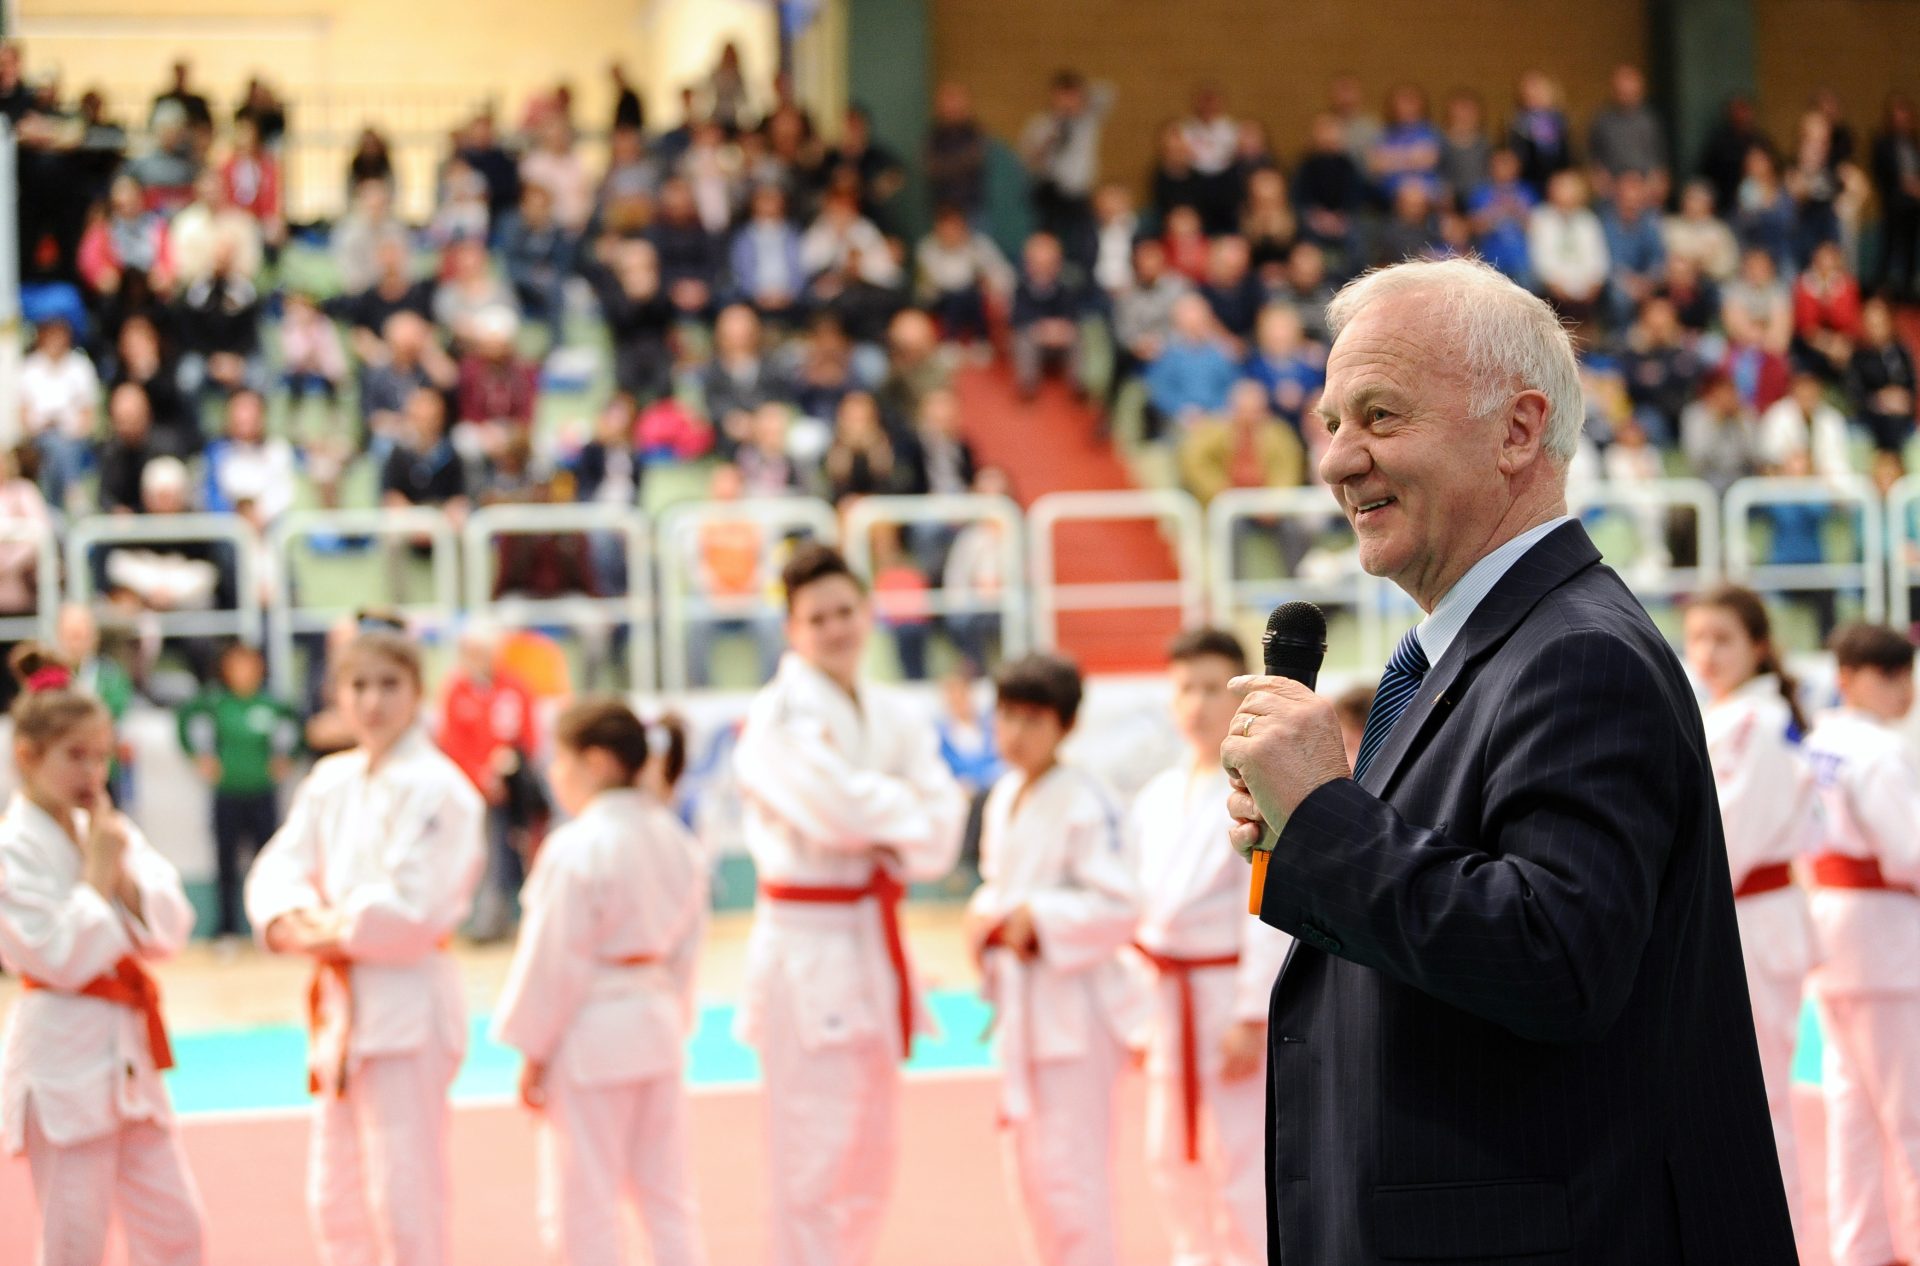 Un uomo in giacca e cravatta sulla destra, sullo sfondo un palazzetto con alcuni ragazzi vestiti con judoji e persone sugli spalti 